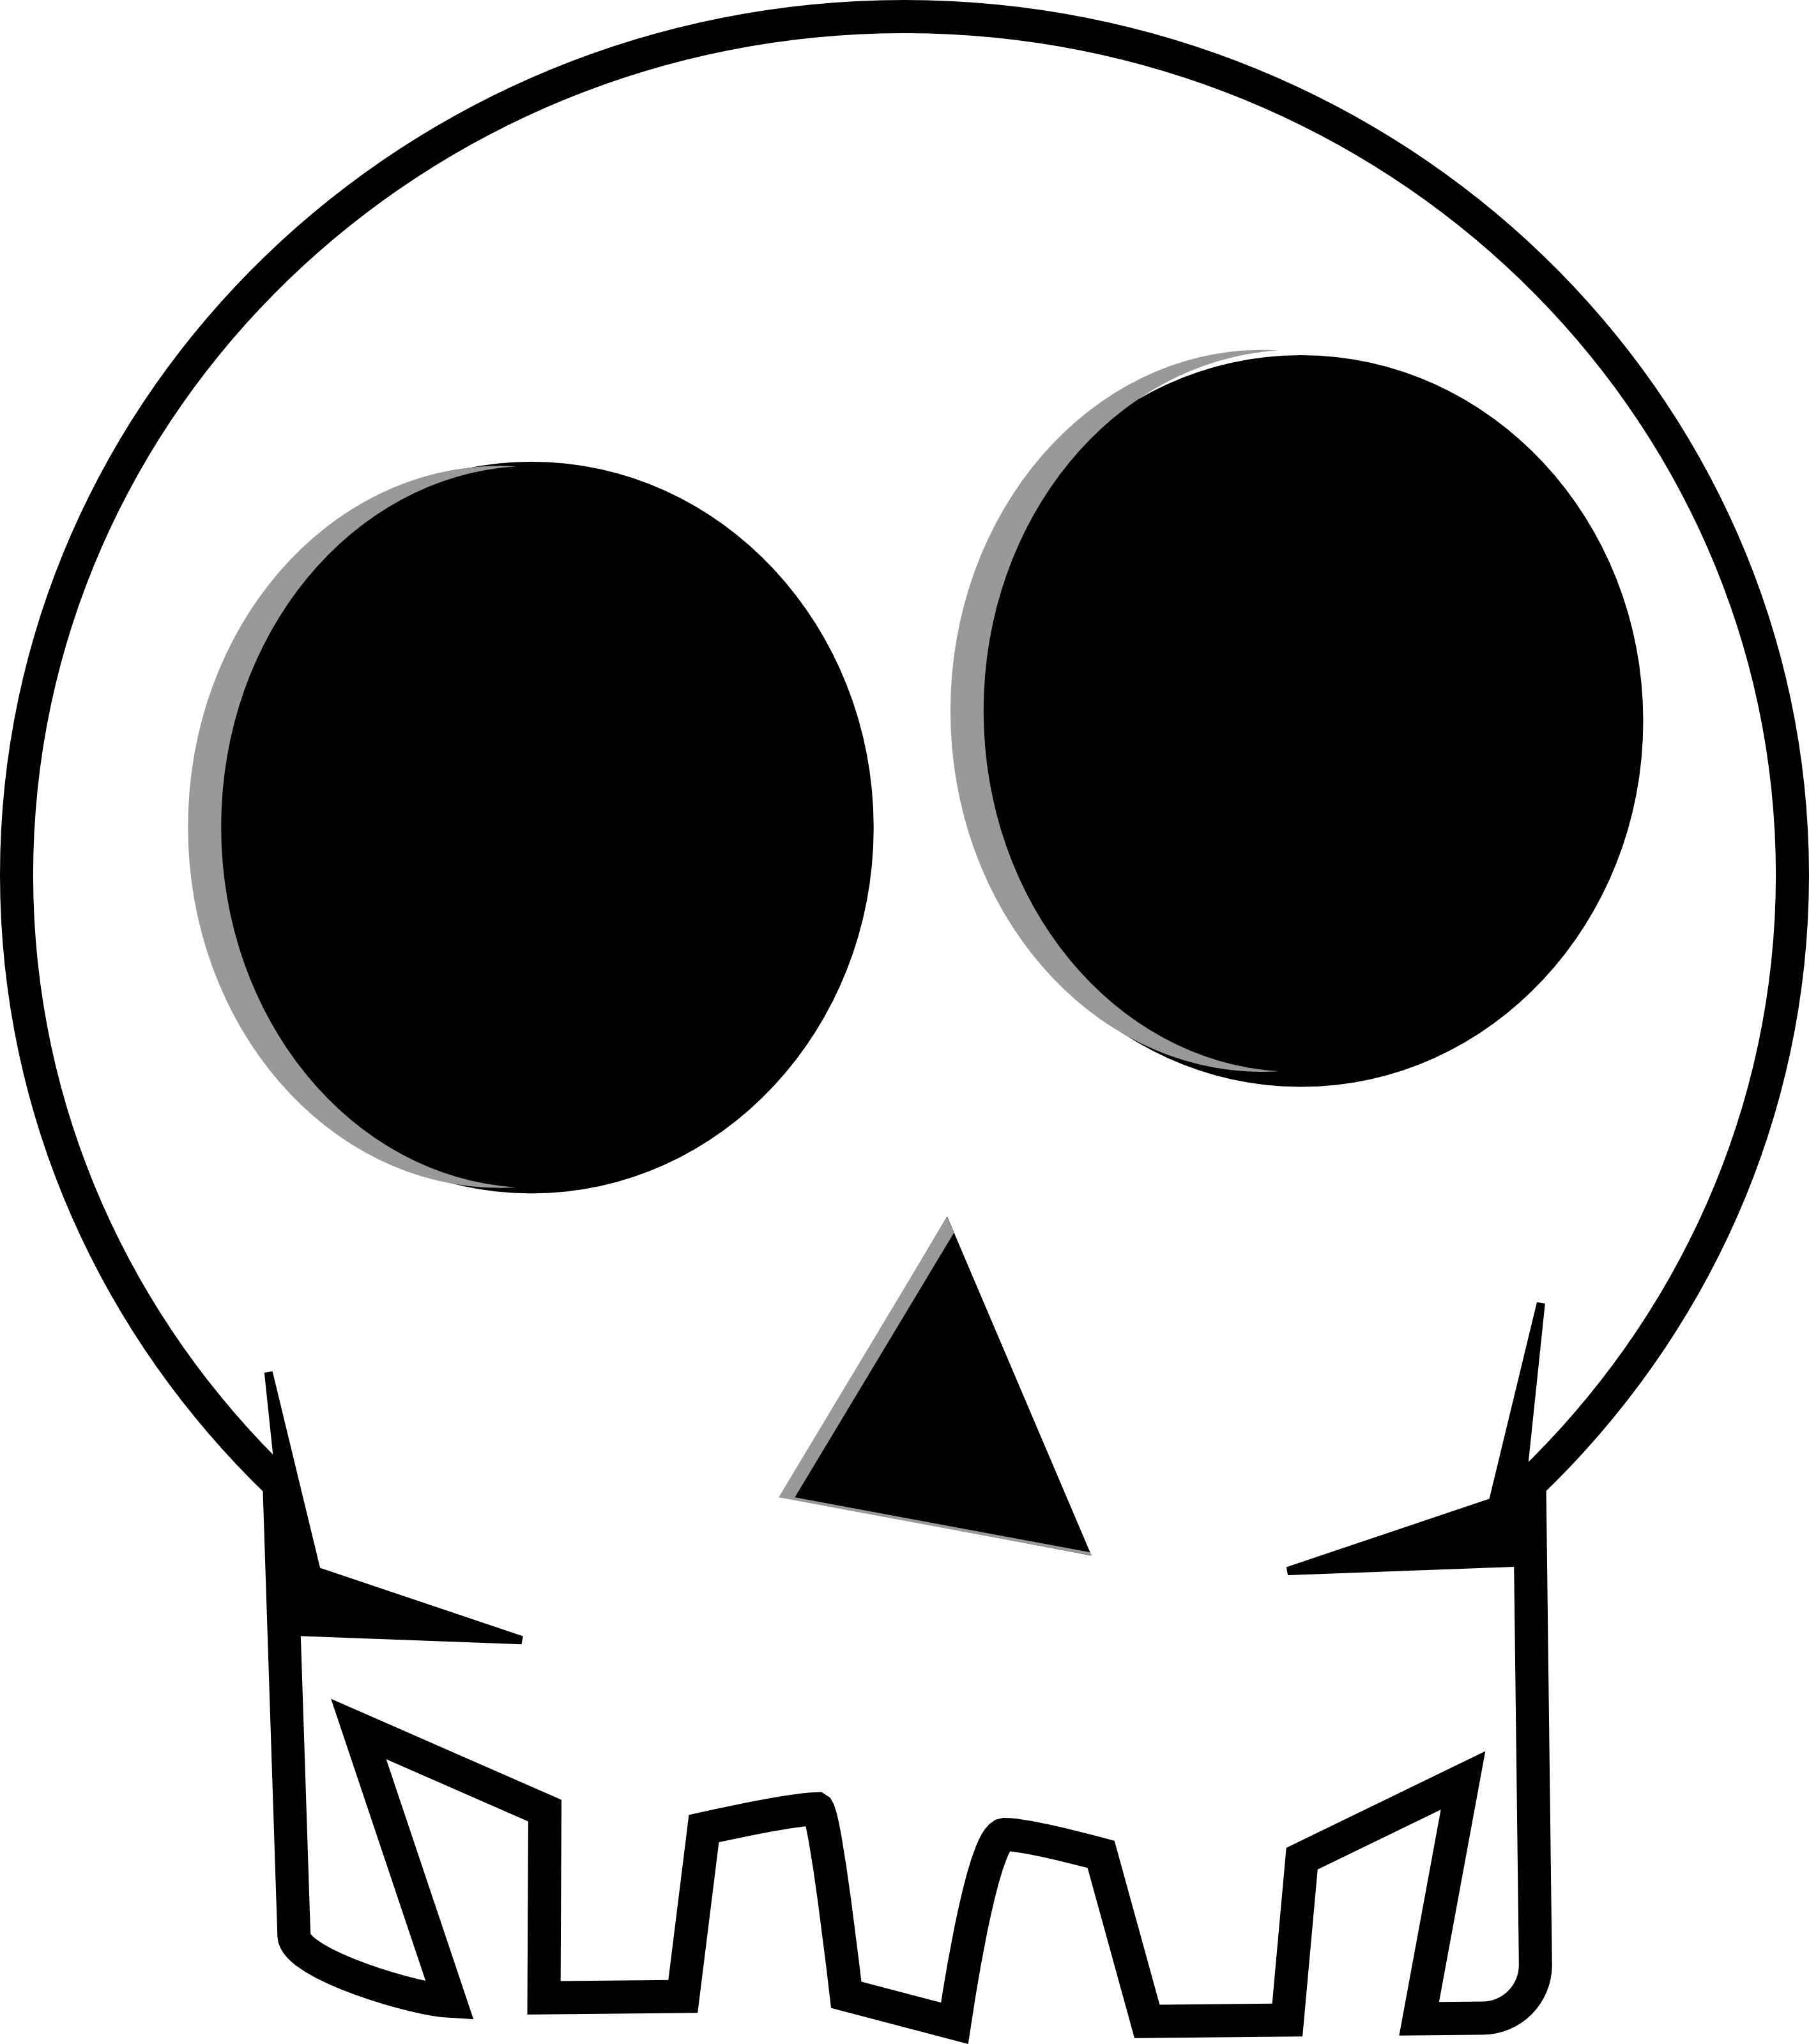 Skeleton skull clipart